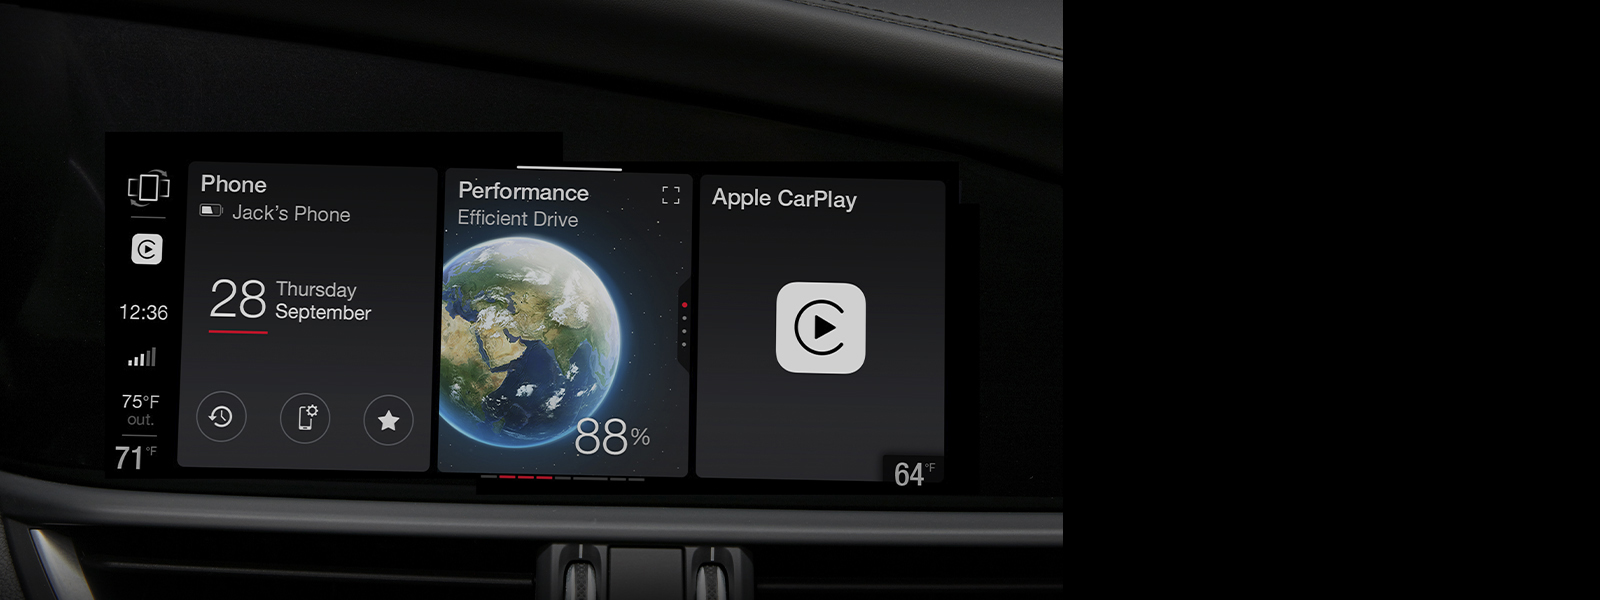 Primer plano de la pantalla multitáctil del Alfa Romeo Giulia Quadrifoglio 2024, que muestra una serie de widgets seleccionables, incluidas las estadísticas de rendimiento del vehículo y Apple CarPlay.